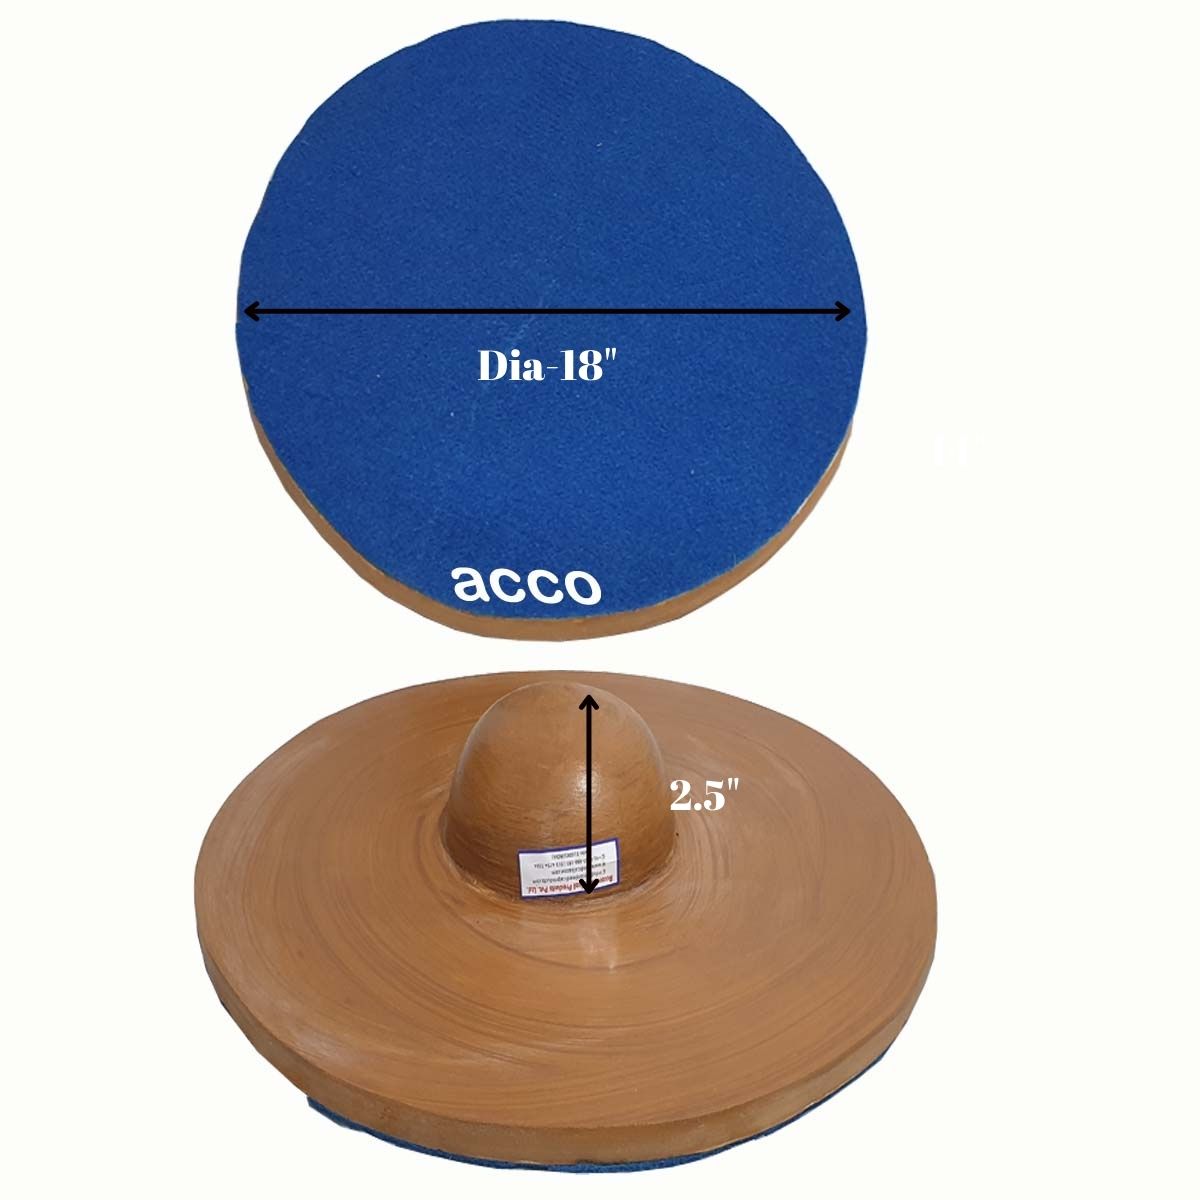 acco Wobble Board (Round, Wooden)